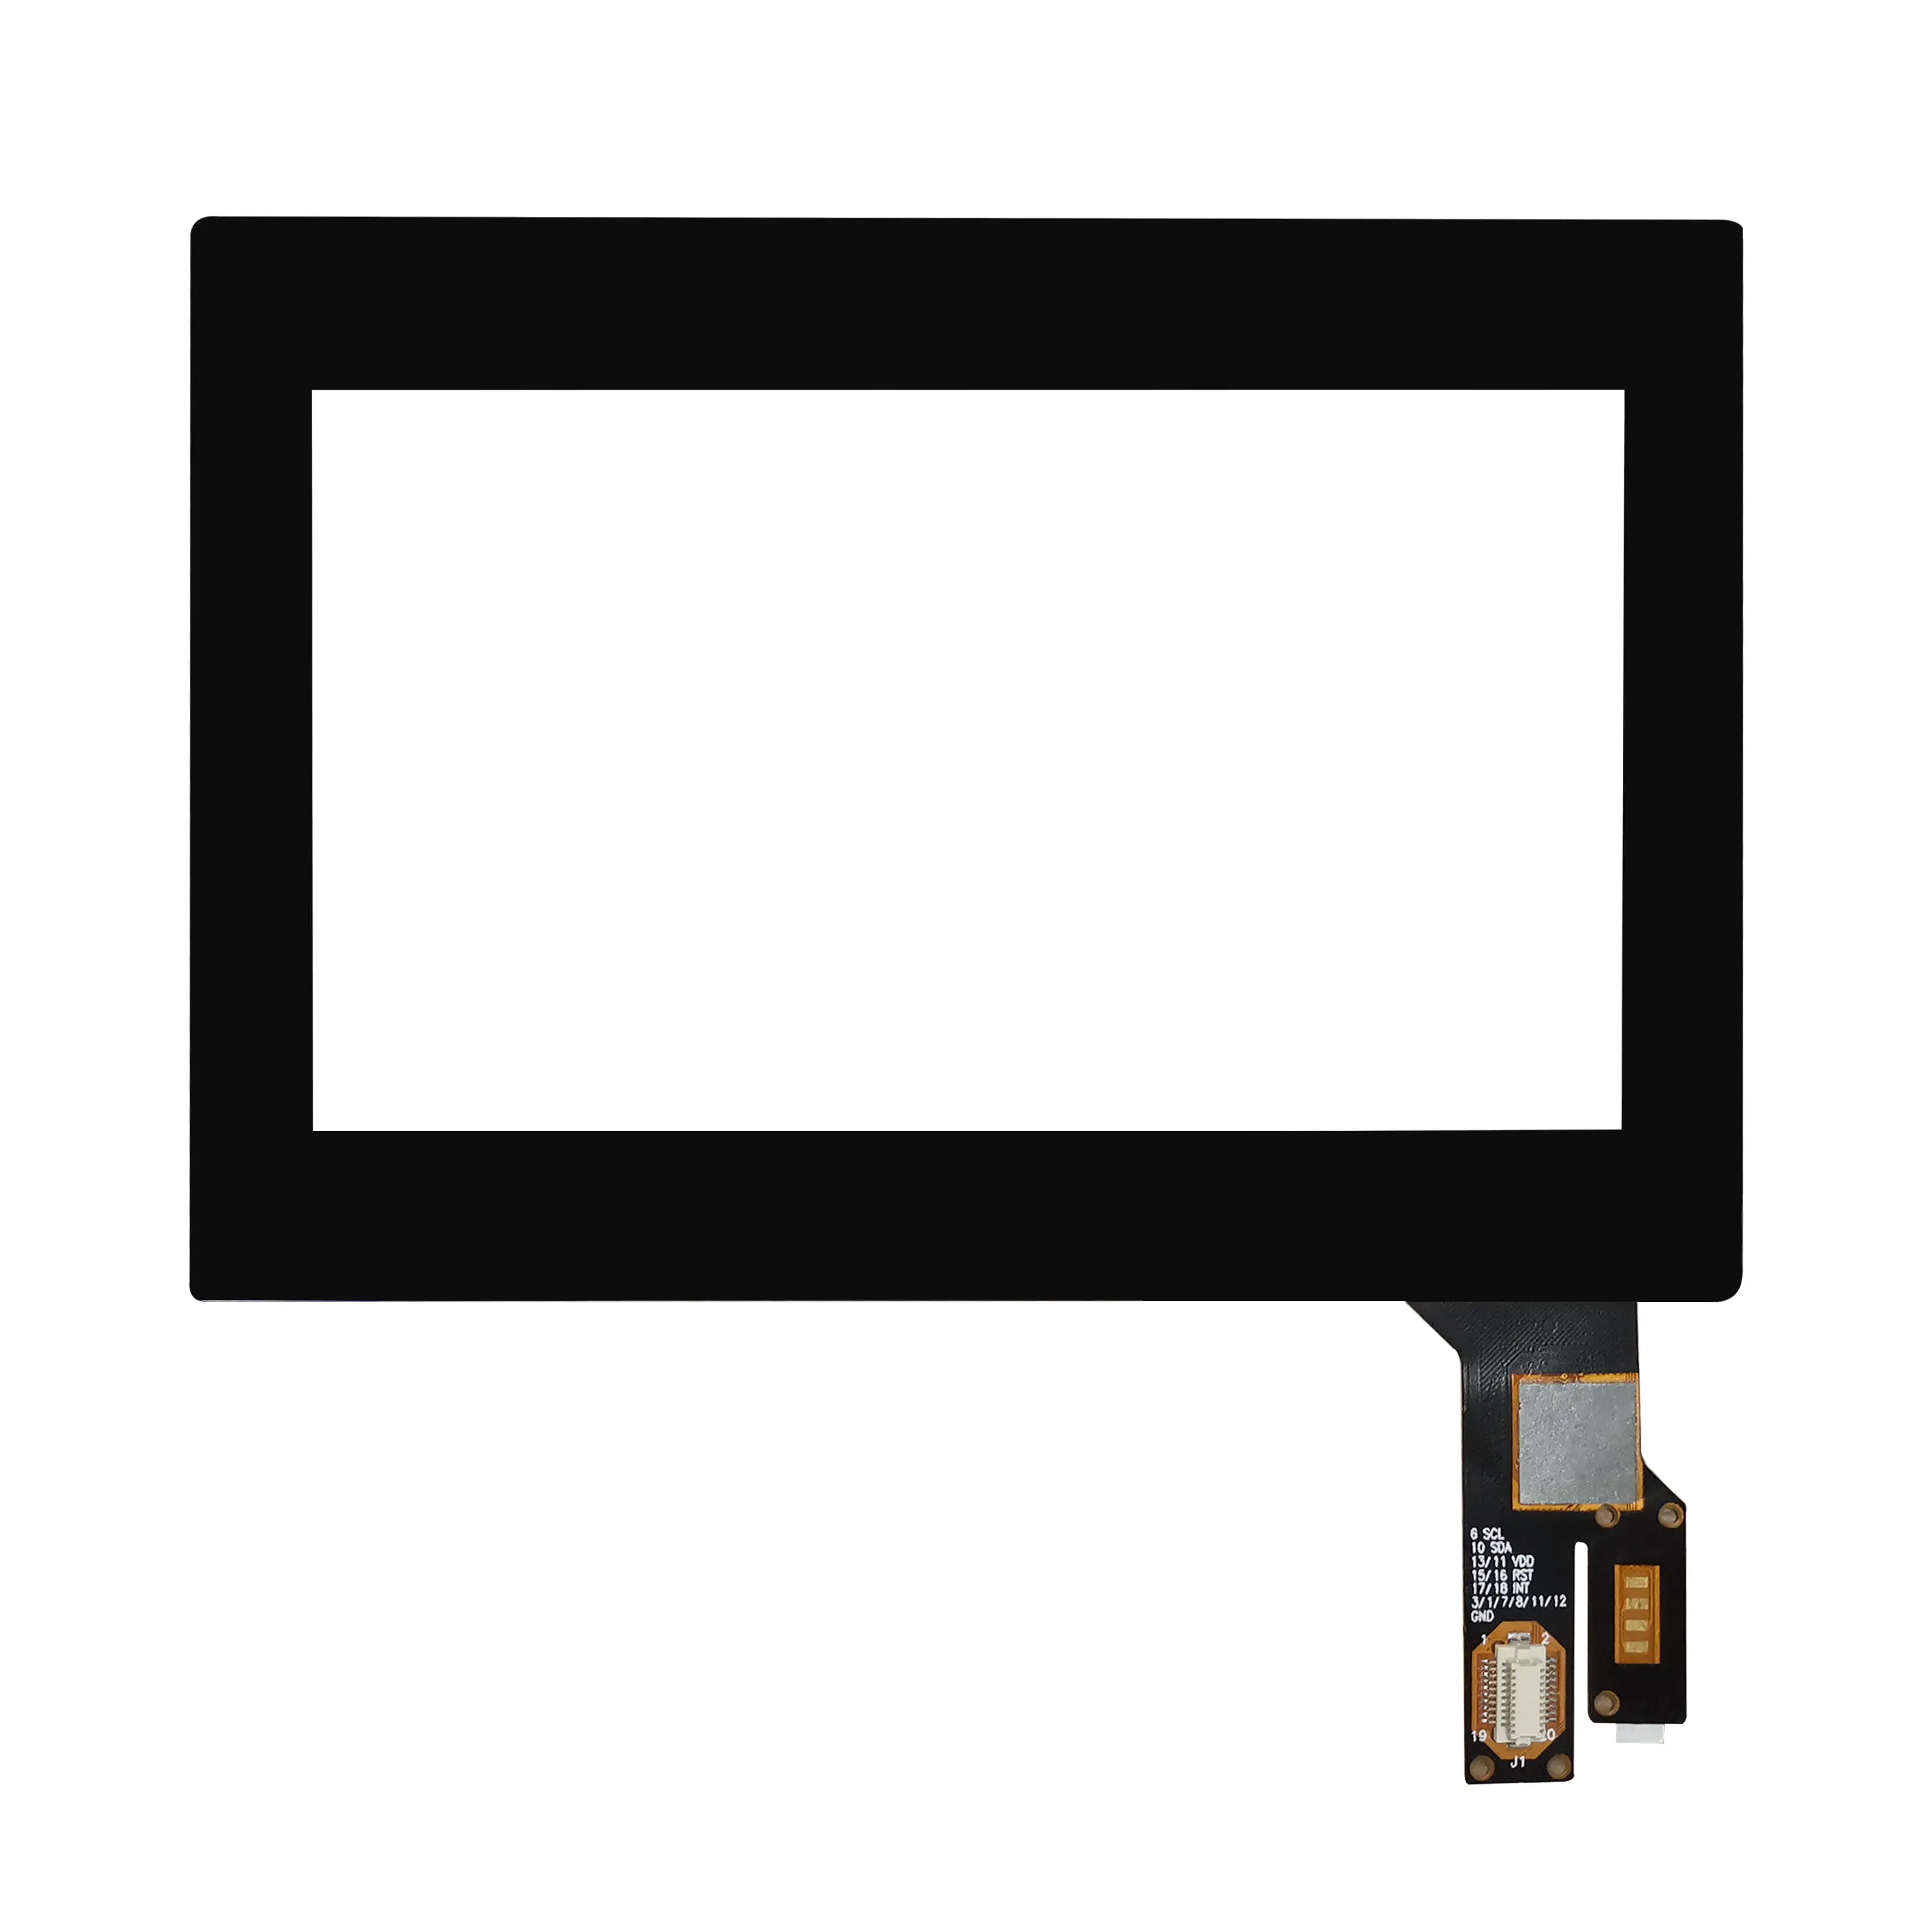 Klein Formaat Aangepaste 4.3 Inch Multi Touch Capacitieve Touchscreen Panel Overlays Met Focaltech Goodix Ilitek